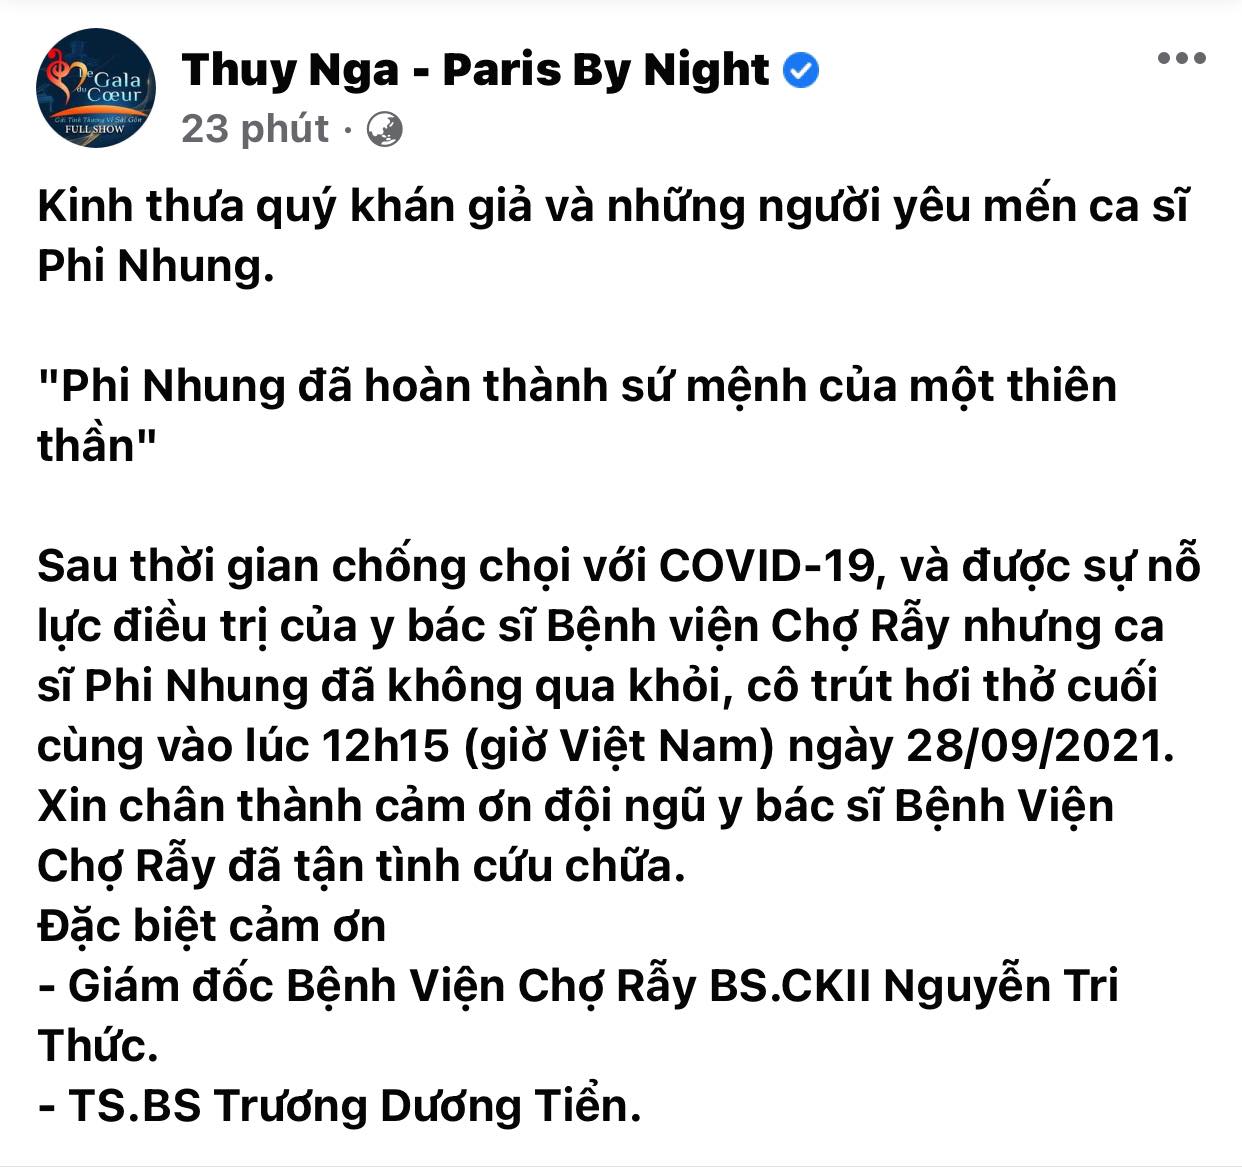 Trung-tam-thuy-nga-colorman-truong-giang-dam-vinh-hung-dau-xot-noi-loi-tien-biet-phi-nhung-3